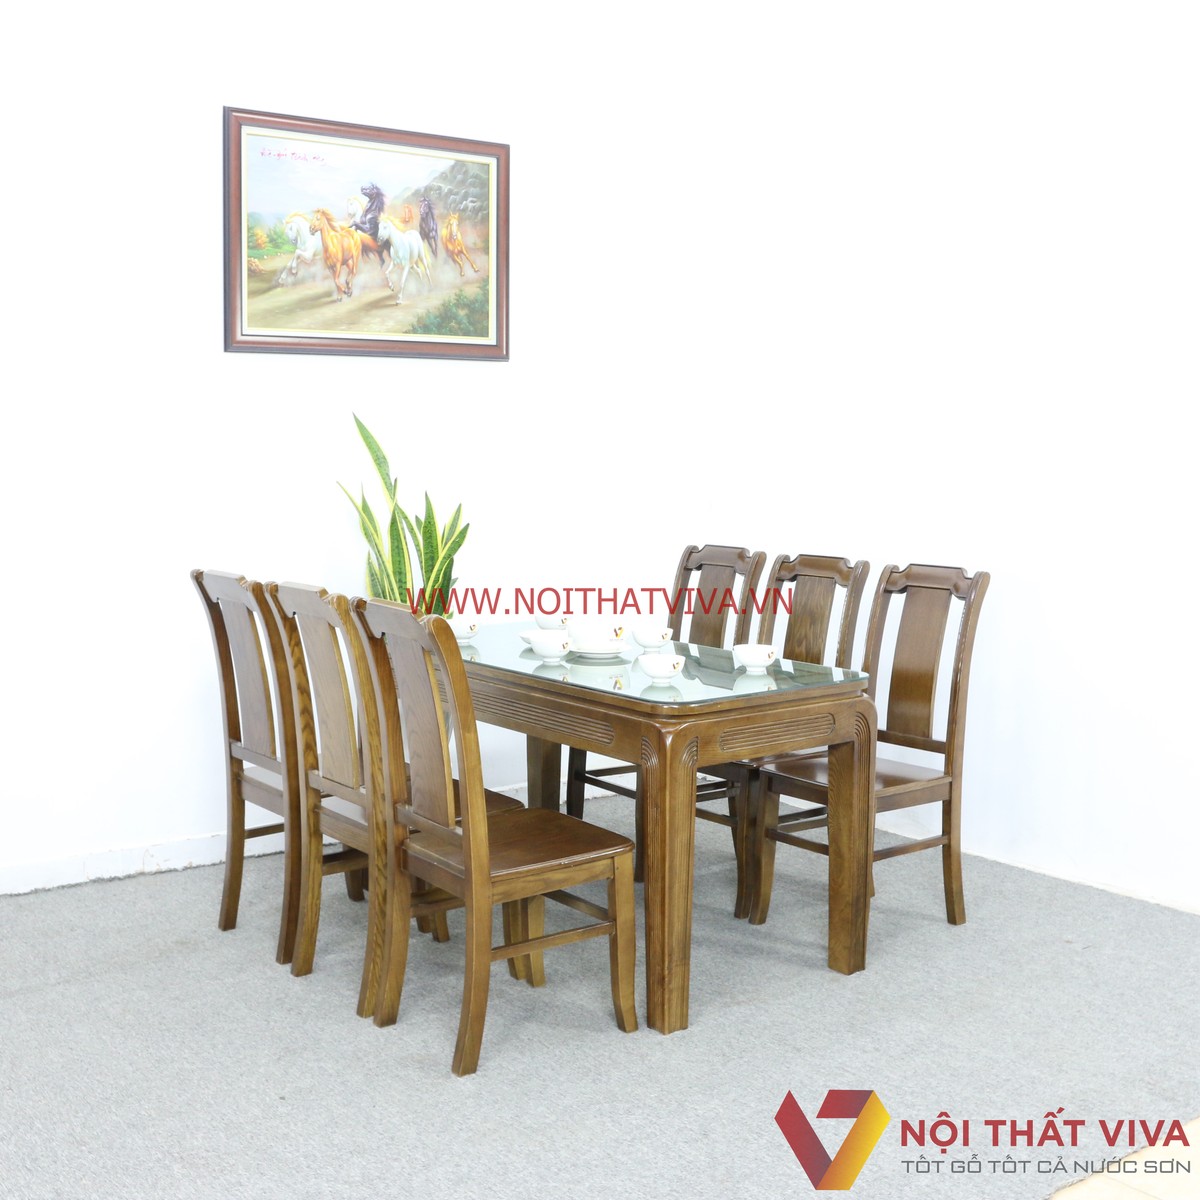 Nếu đang tìm kiếm một chiếc bàn ăn gỗ mặt kính đẹp, thì hãy đến với Thế Giới Sofa và khám phá các mẫu bàn ăn 6 ghế đẹp mặt kính bạn cần biết. Với nhiều kiểu dáng và màu sắc khác nhau, các mẫu bàn ăn gỗ mặt kính cao cấp của Thế Giới Sofa sẽ thỏa mãn mọi yêu cầu của bạn và trang trí hoàn hảo cho phòng ăn của bạn.